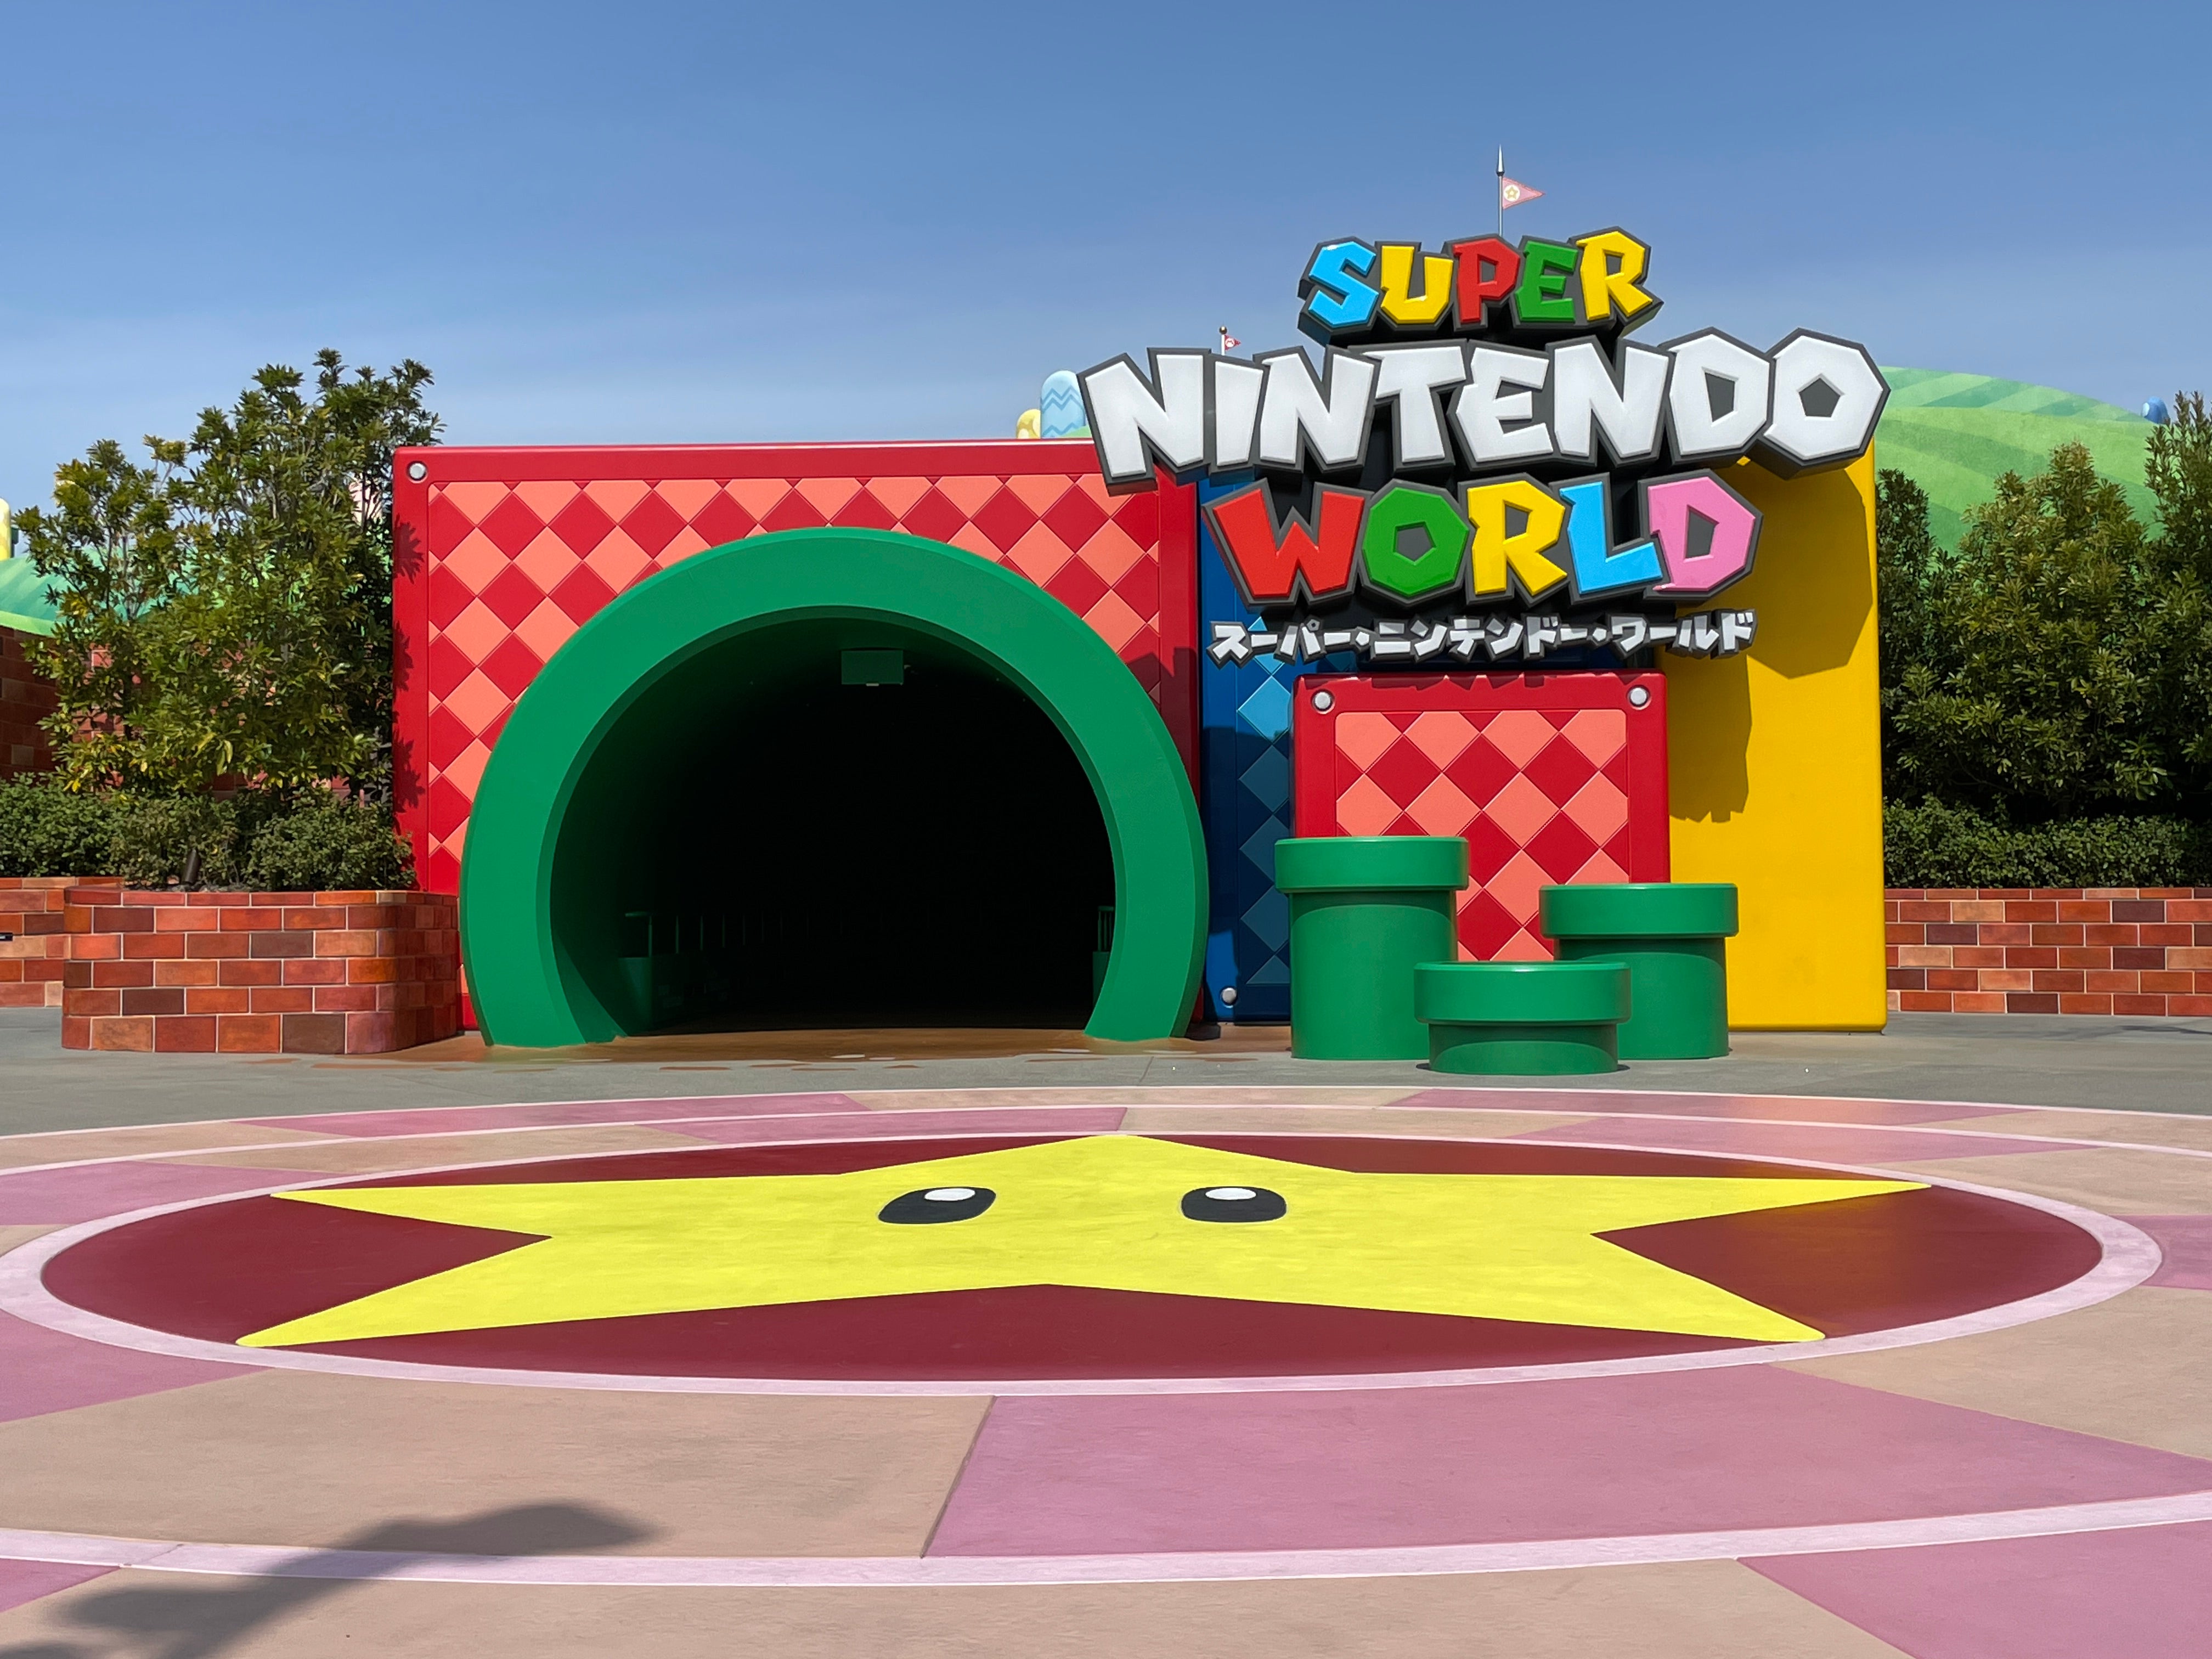 Super Nintendo World Resmi Dibuka, Intip Berbagai Wahana di Dalamnya